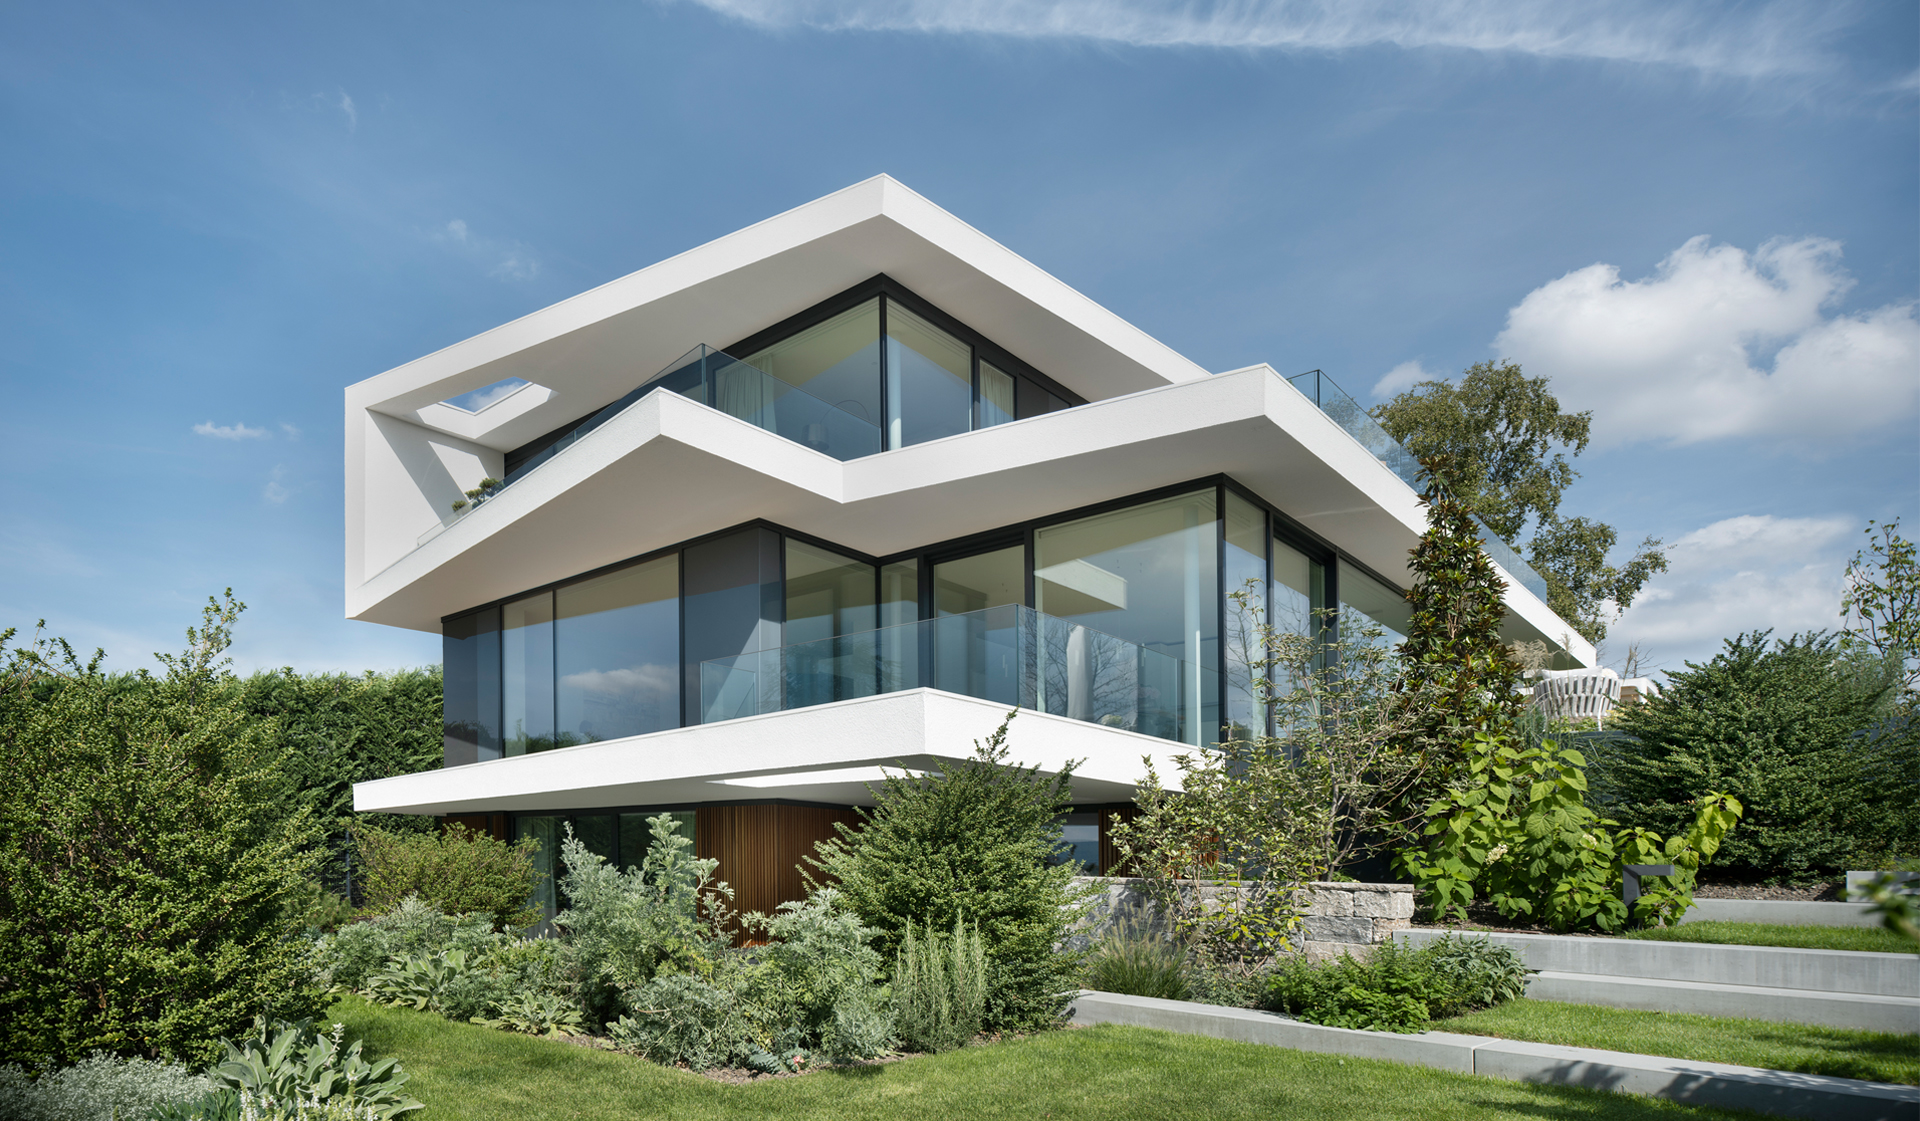 Villa in Wiesbaden Aussenansicht mit verglaster Fassade